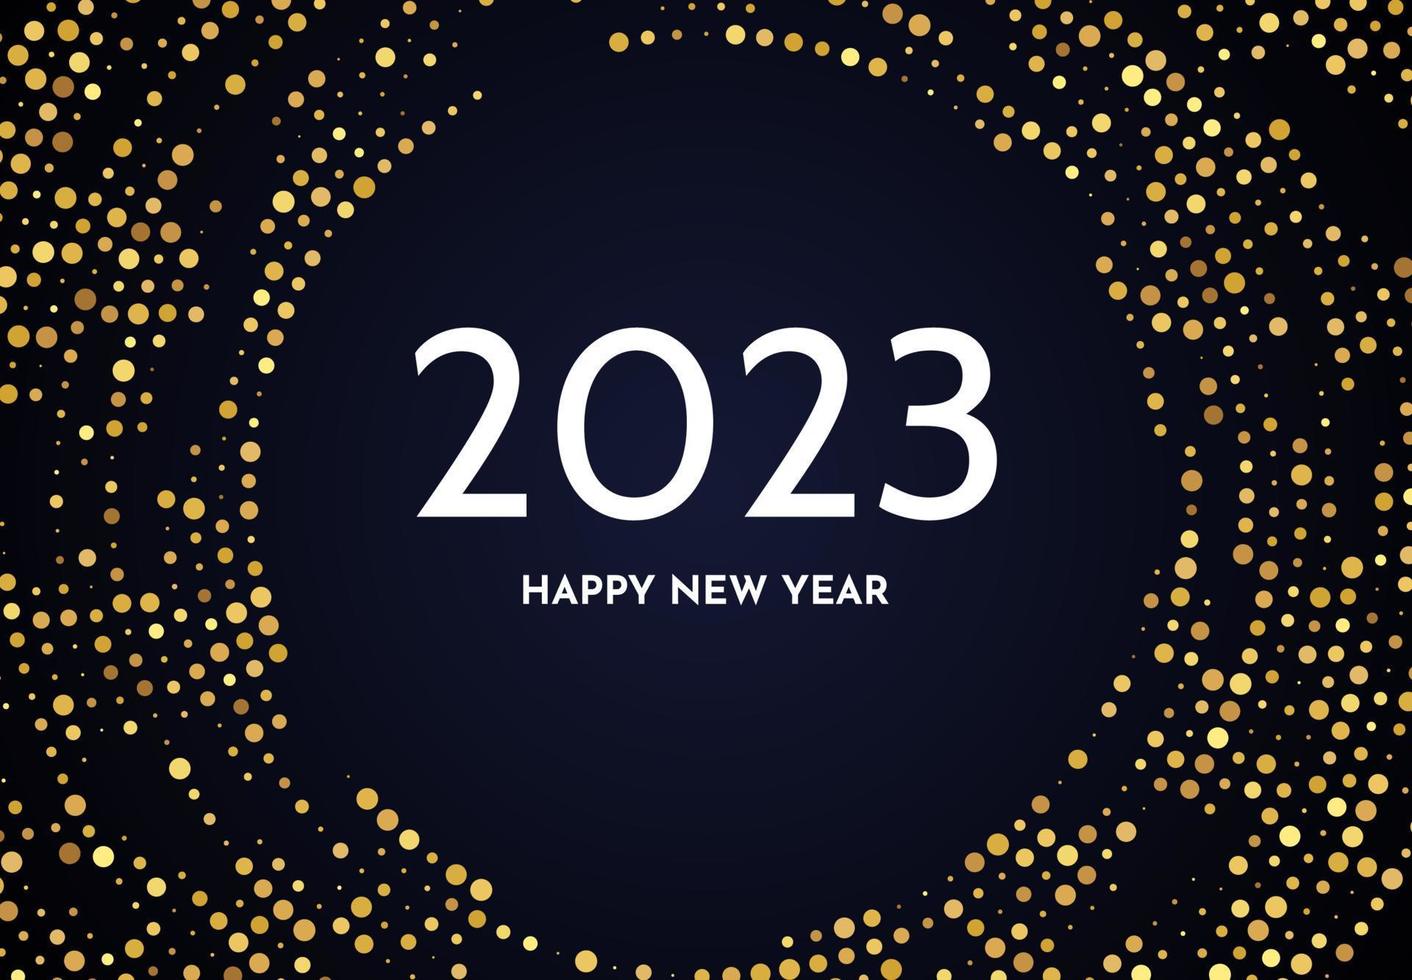 2023 Frohes neues Jahr mit goldenem Glitzermuster vektor